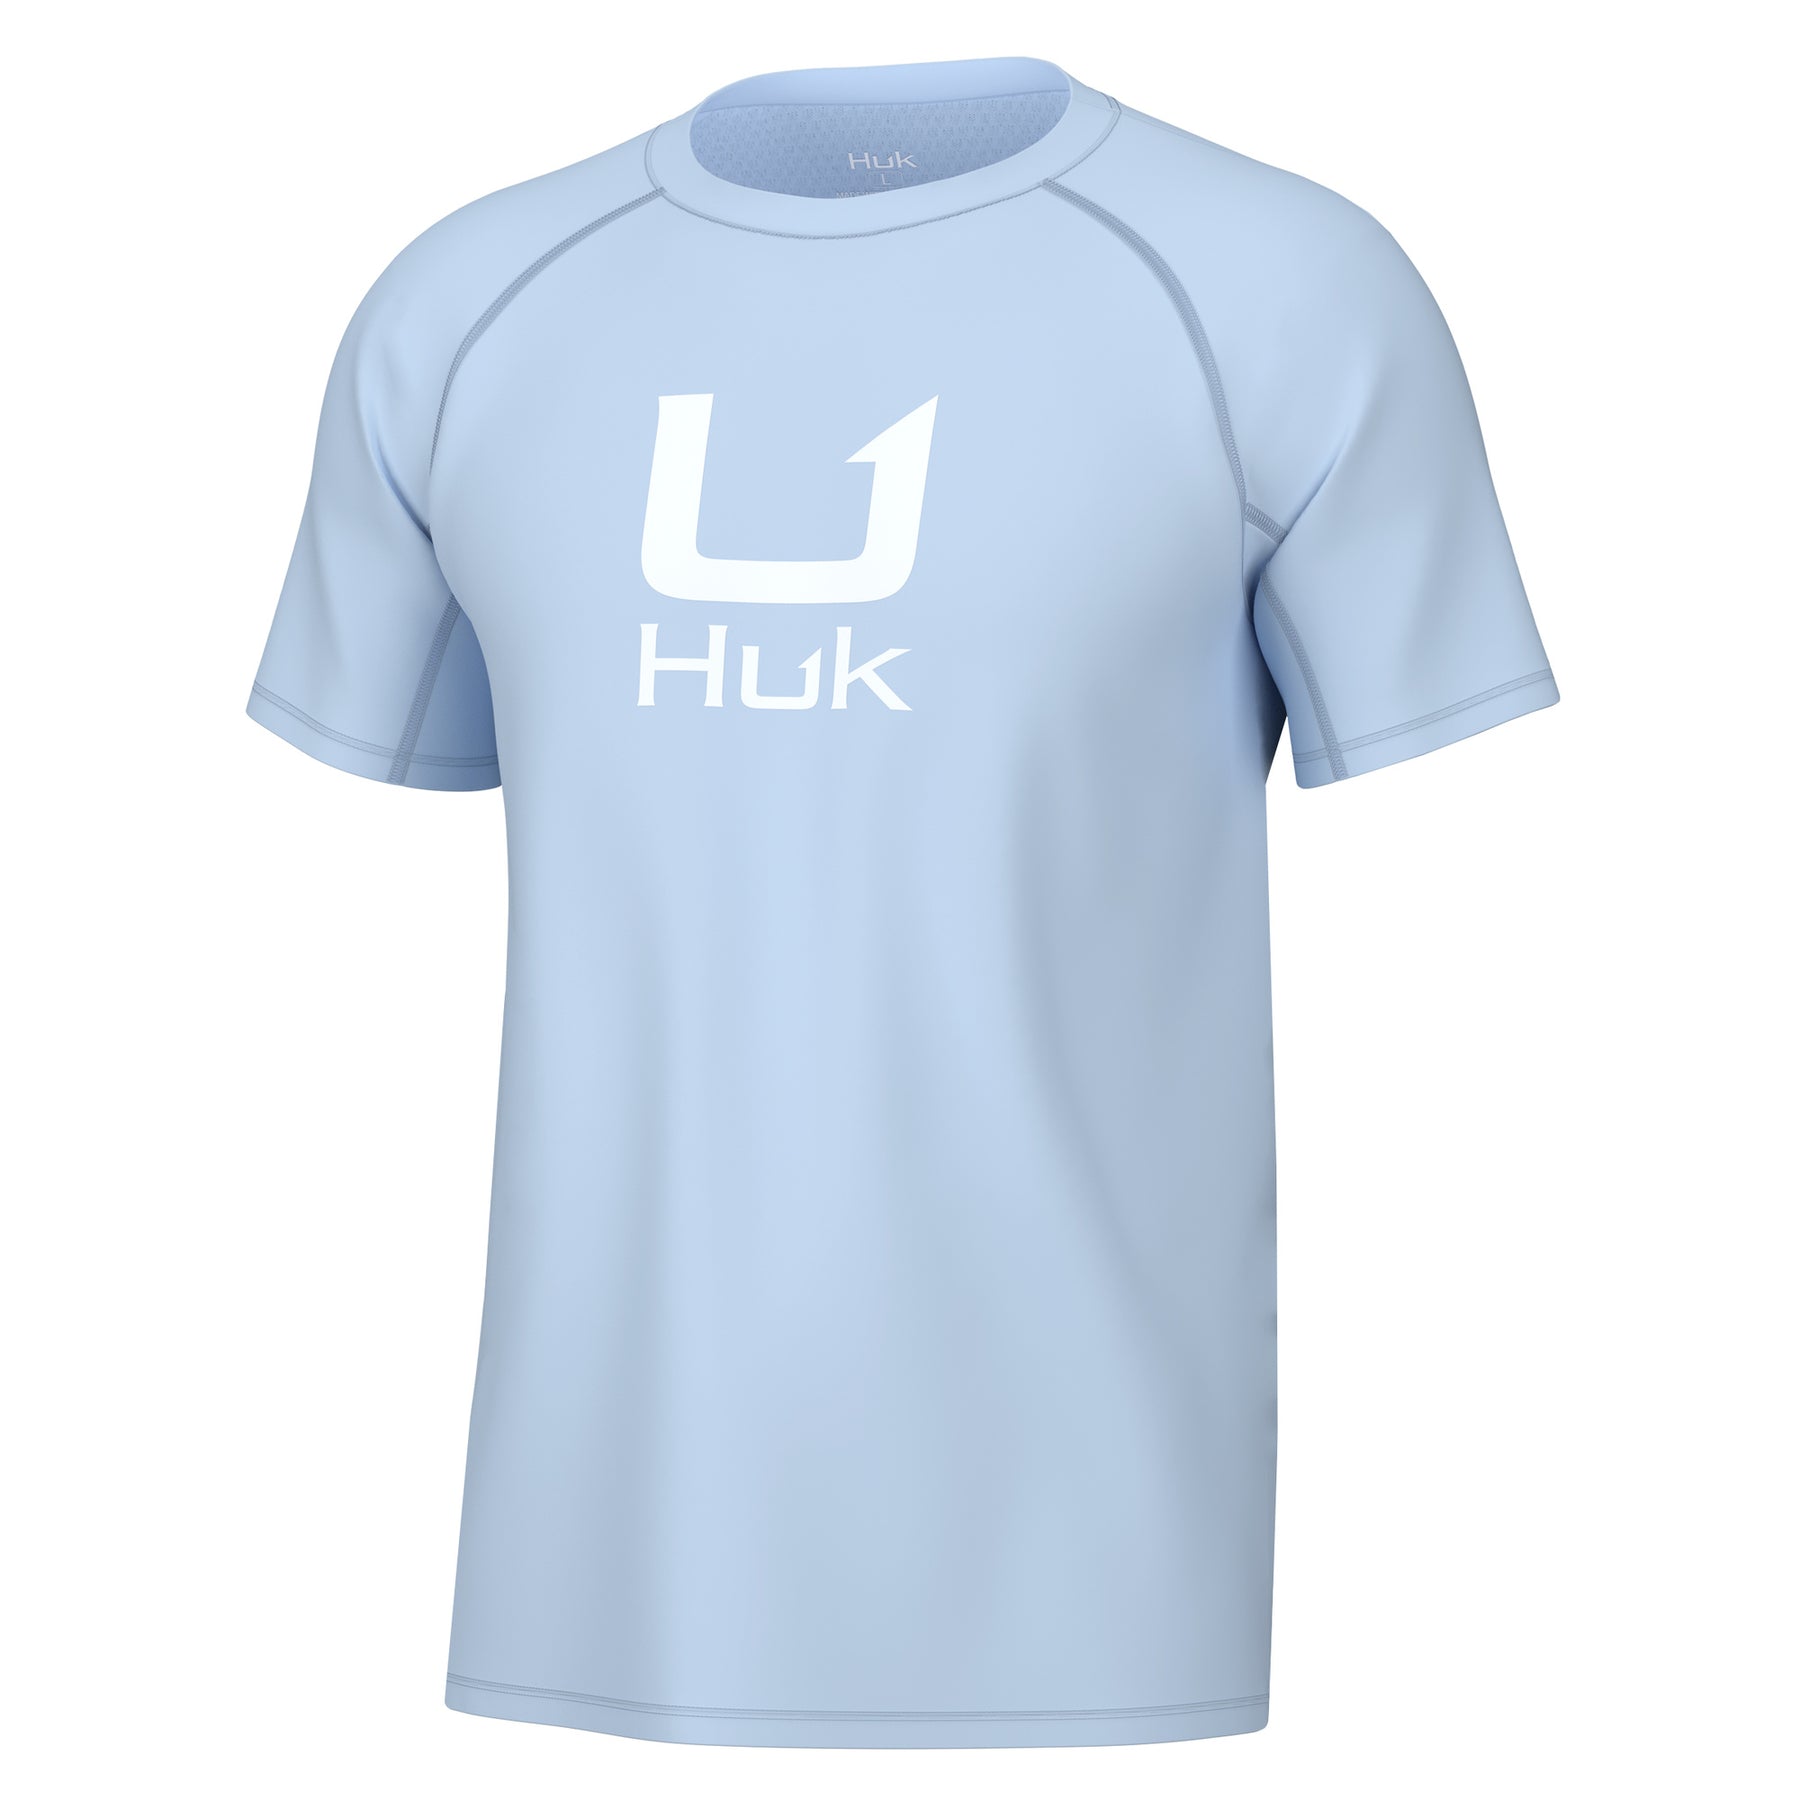 HUK Teaser Short Sleeve Shirt  Performance Button Down, Silver